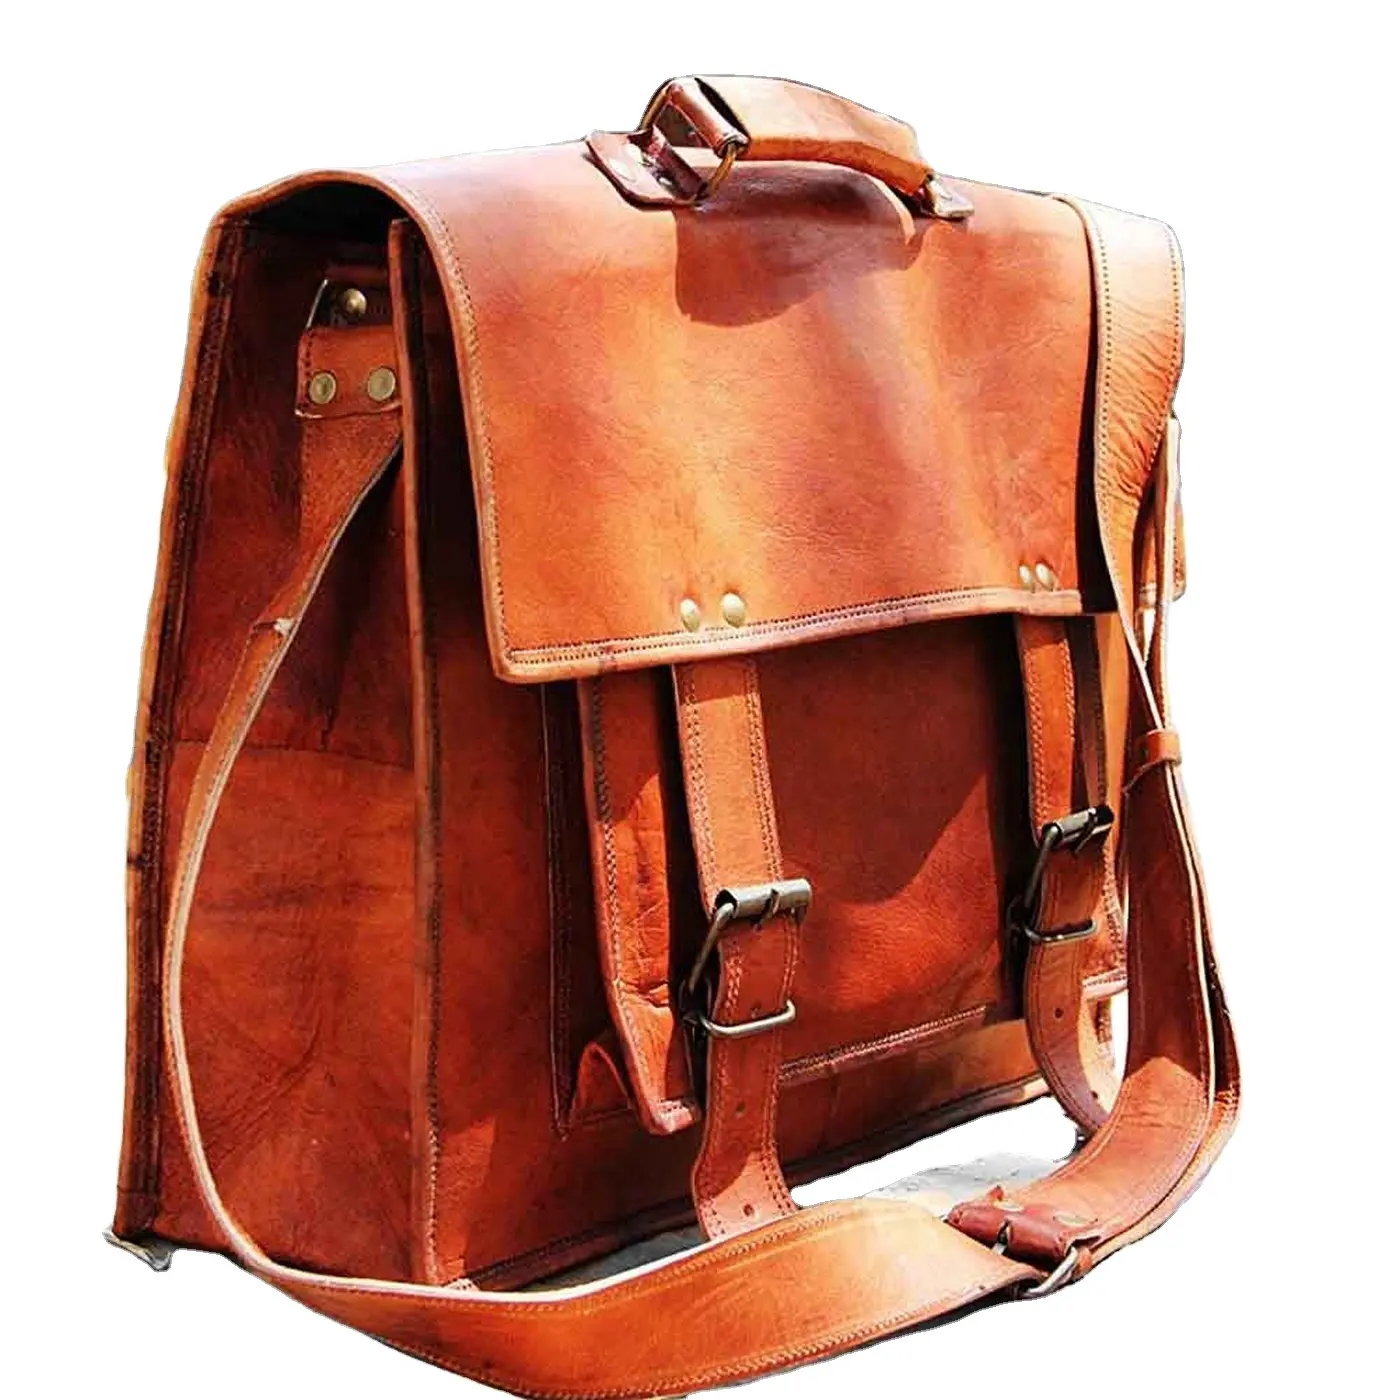 Unisex - Made for both Men & Women - Laptop Messenger / Satchel Bag - Soft Leather Vintage look Lightweight Shoulder Bag